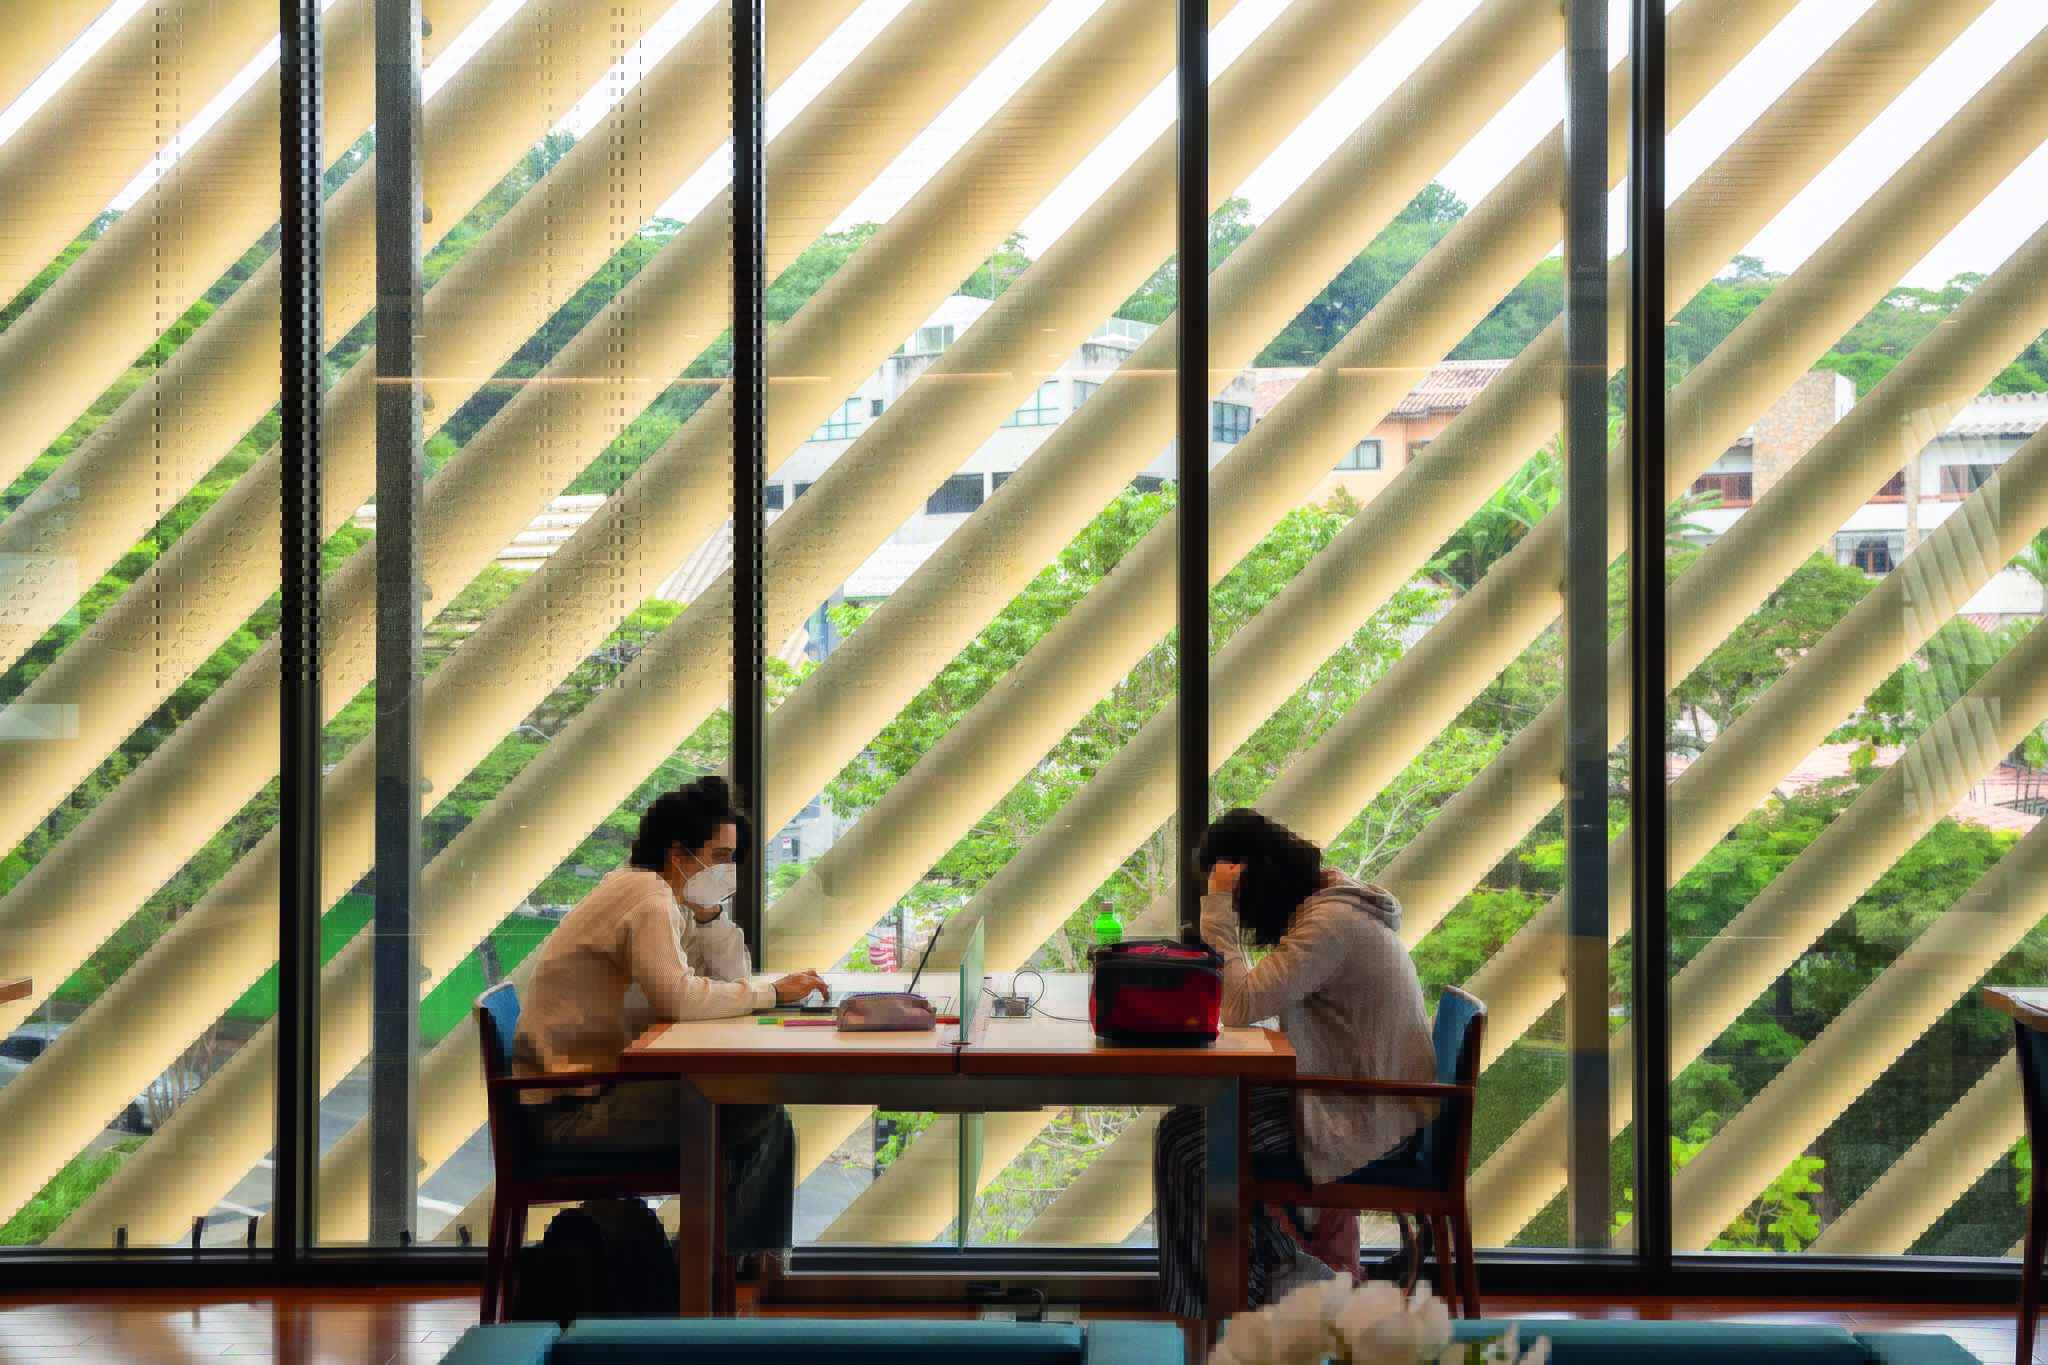 Duas estudantes sentadas em uma mesa de uma das cafeterias do prédio. A parede permite que frestas de luz passem, o que deixa o ambiente aconchegante